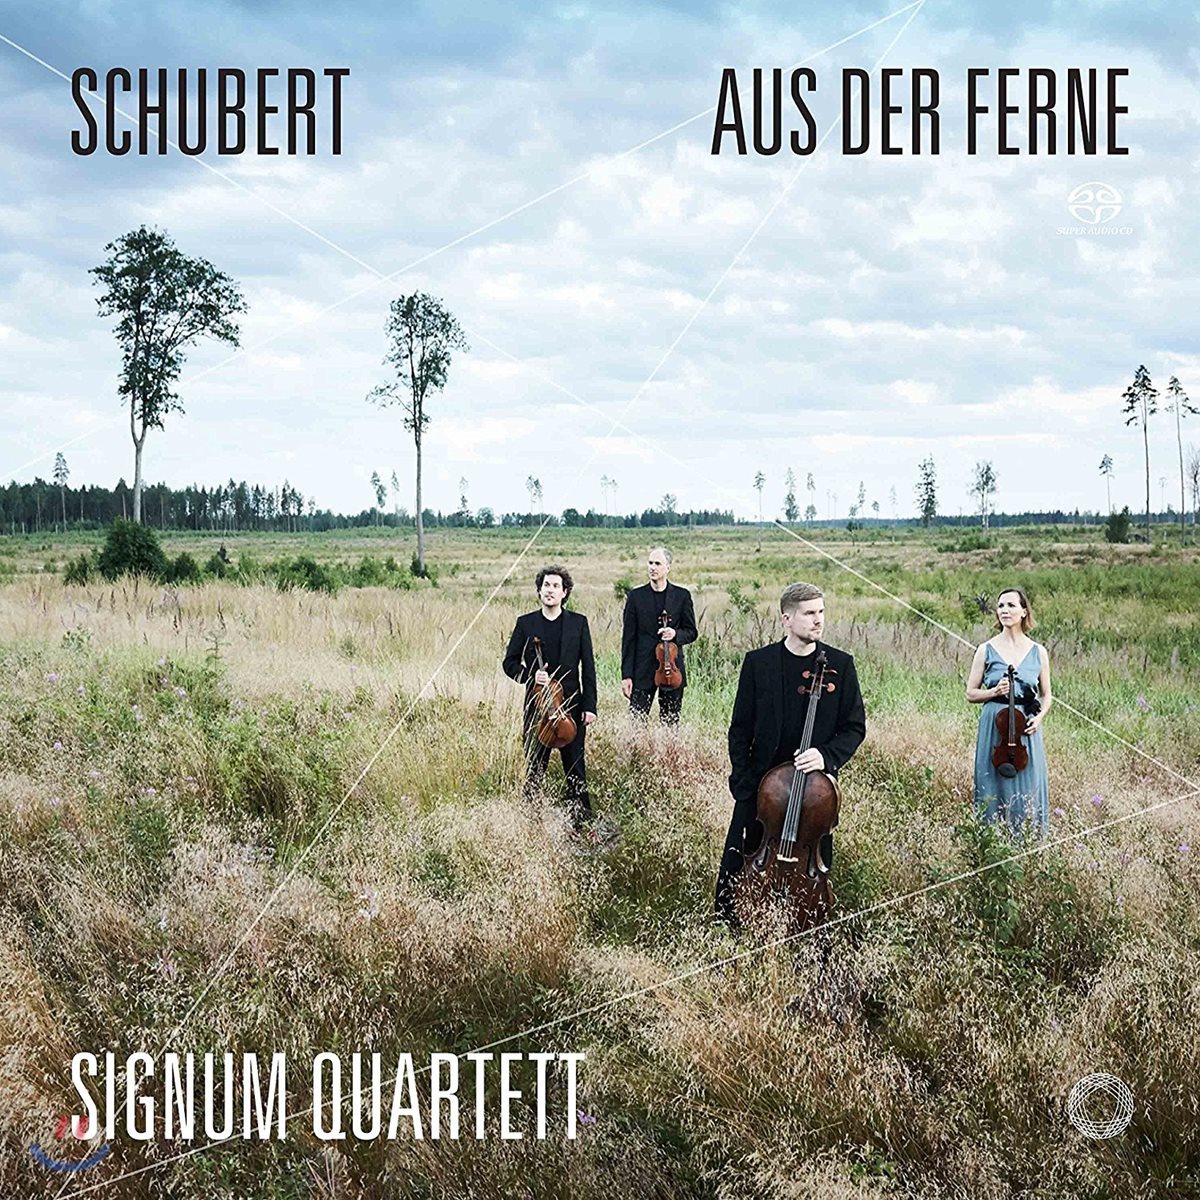 Signum Quartett 슈베르트: 가곡집 - 현악 사중주 편곡반 (Schubert: Aus der Ferne)